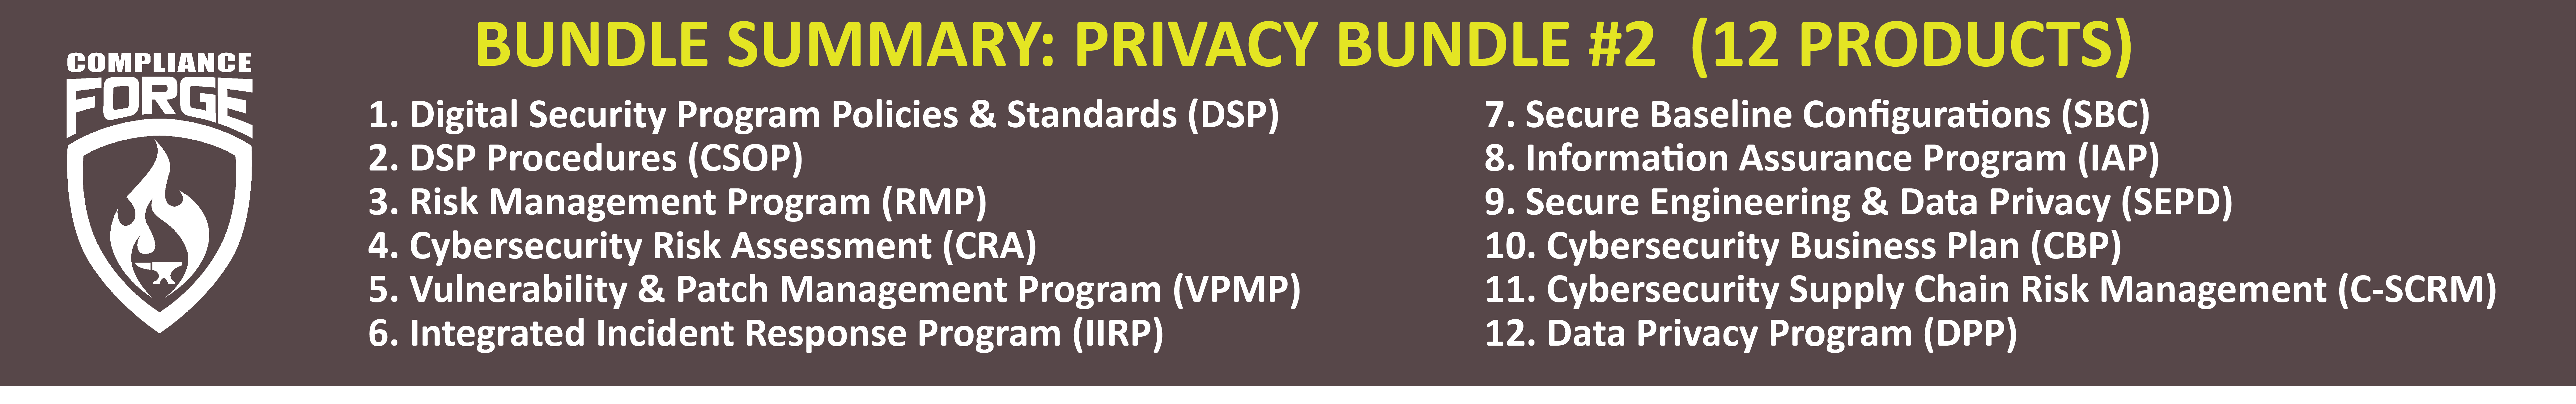 privacy bundle 2